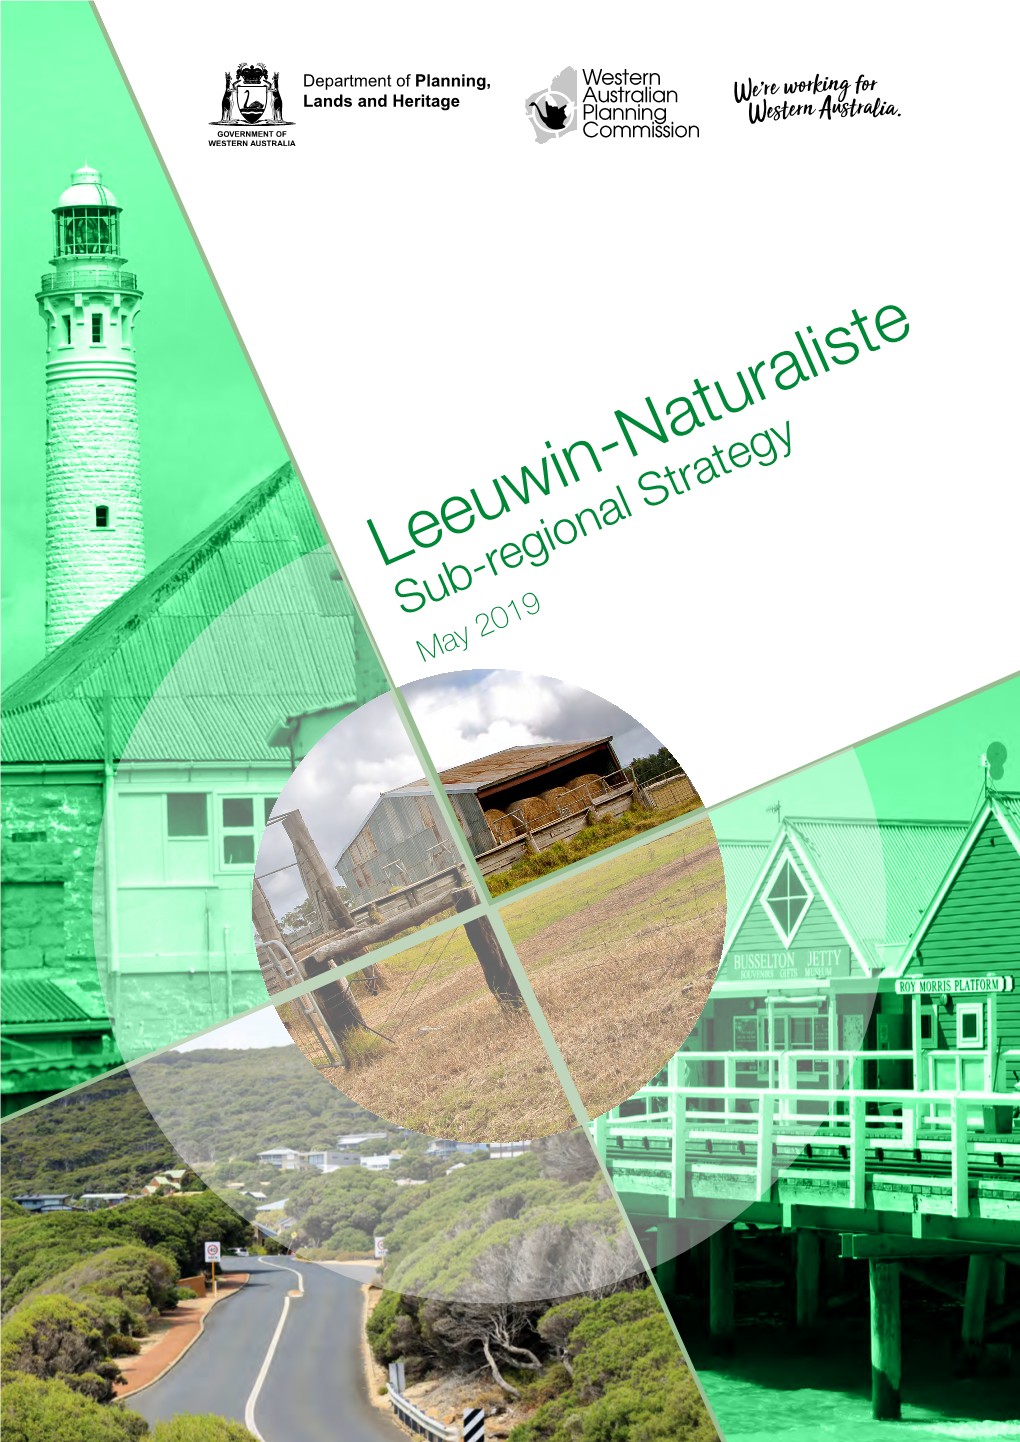 Leeuwin-Naturalist Sub-Regional Strategy